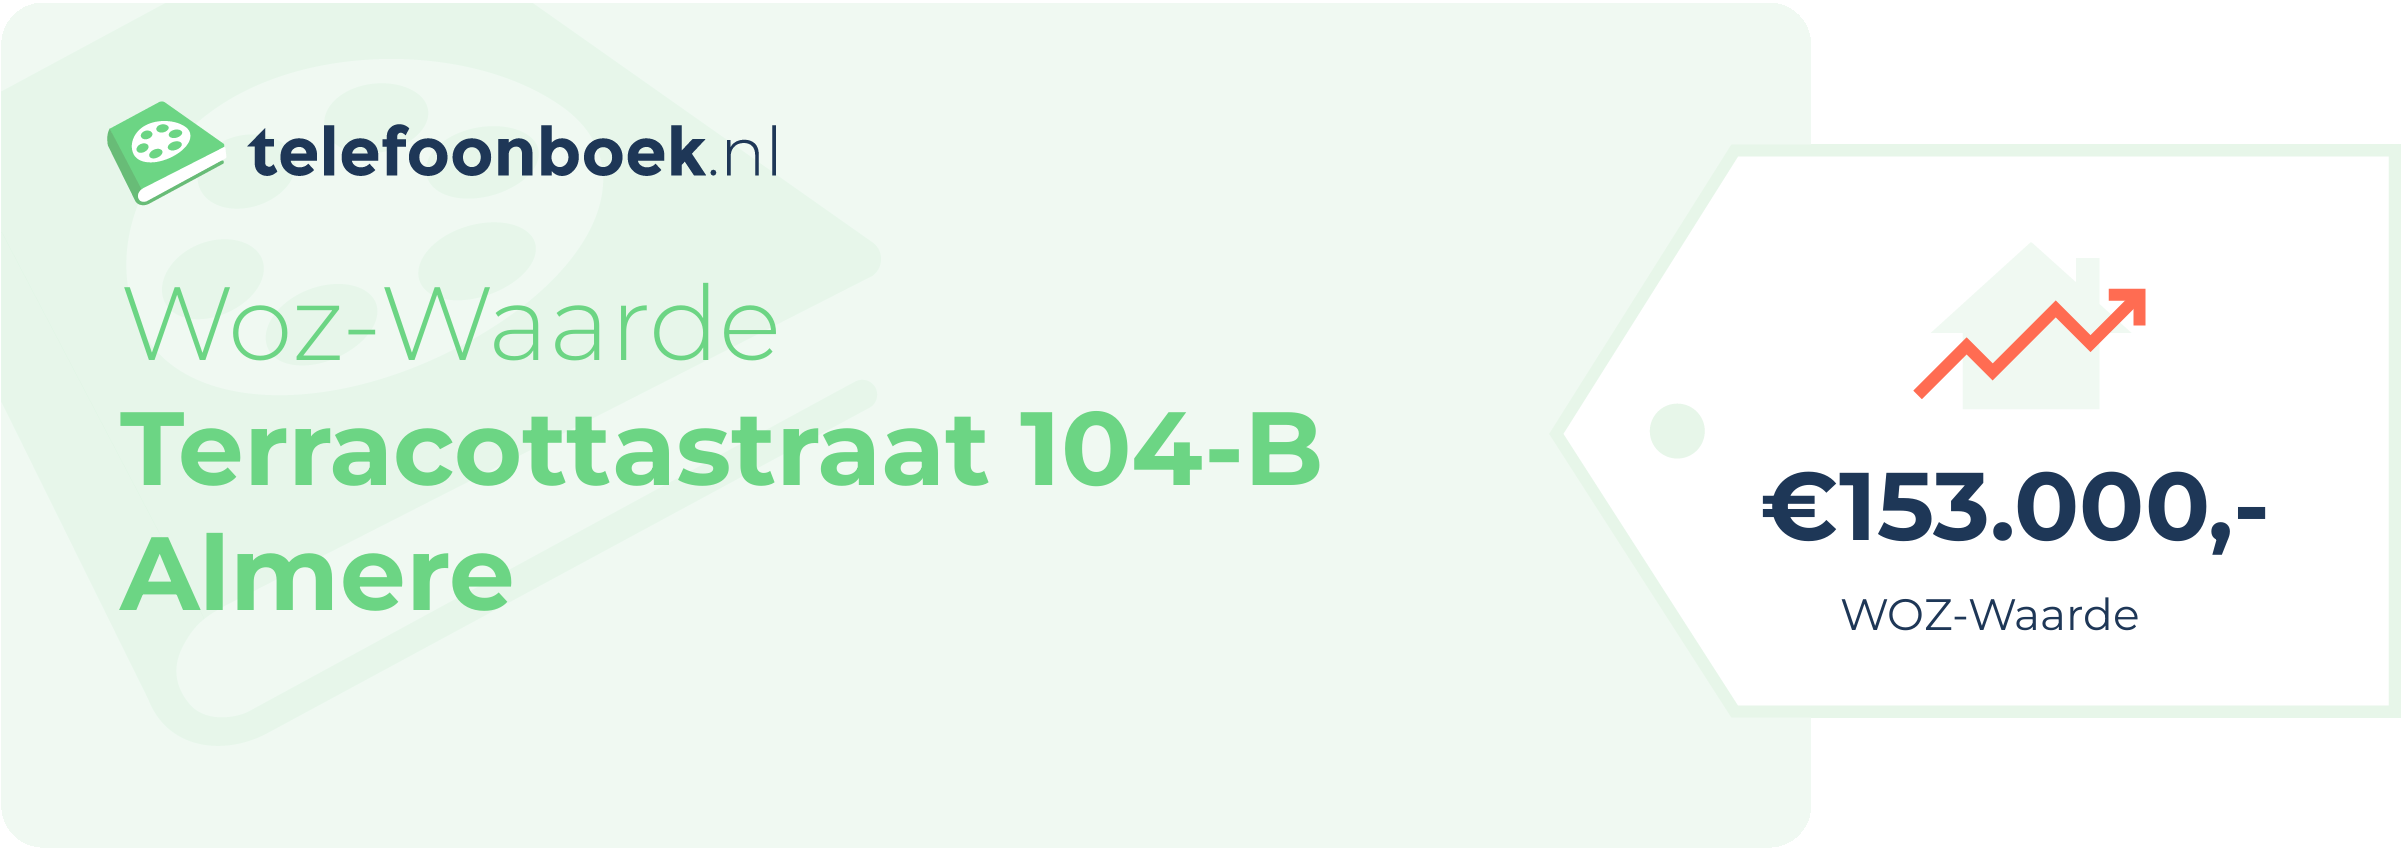 WOZ-waarde Terracottastraat 104-B Almere